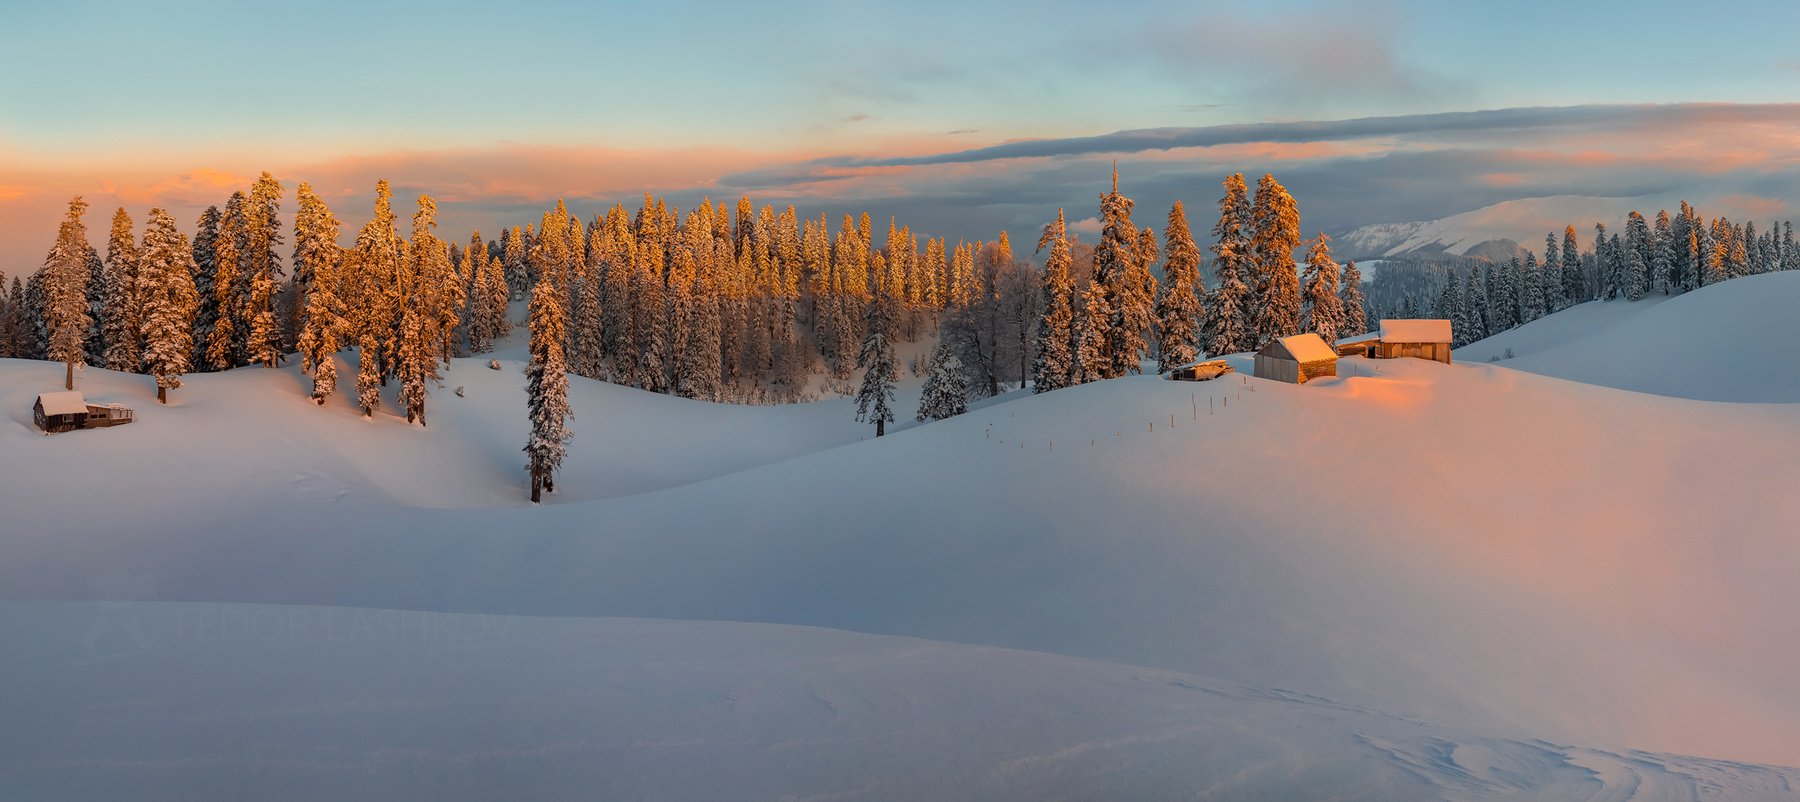 Праздник к нам приходит! Абхазия путешествие туризм горы зима лес в горах Мамдзышха пихта снег склоны рассвет оранжевый снежный снегу домик хижина дом